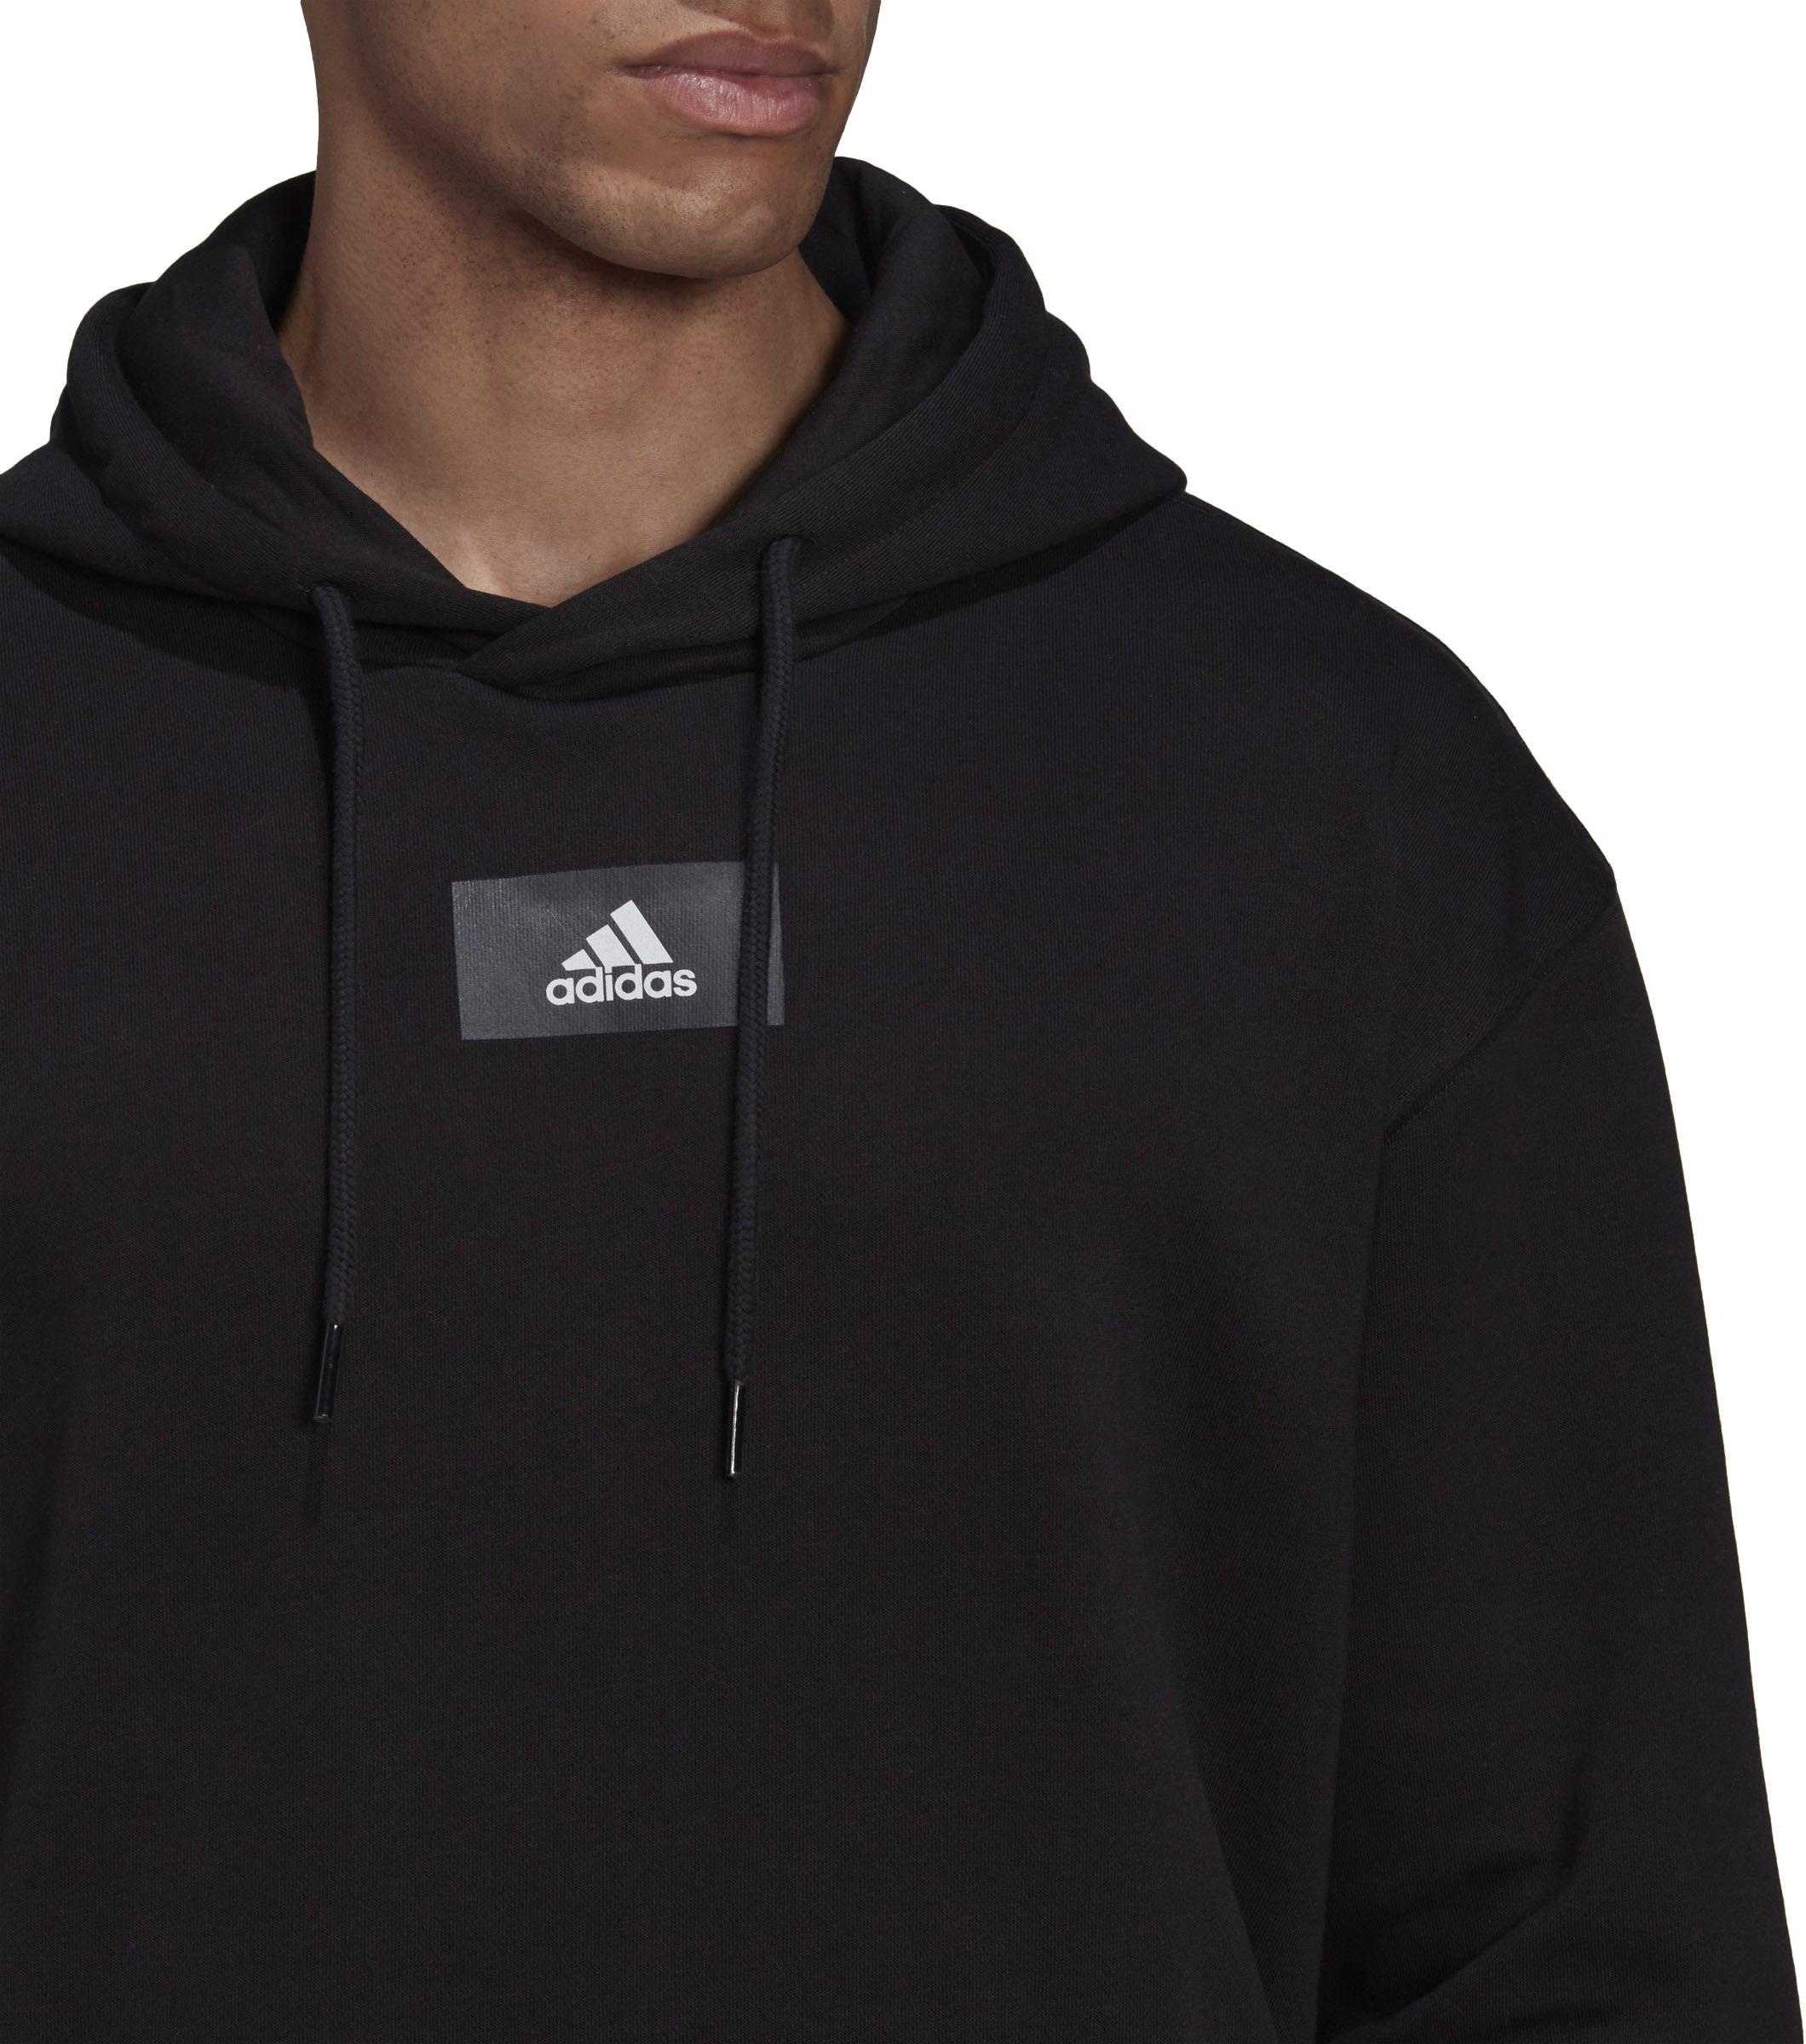 doble Espinas márketing Adidas Hoodie Herren black im Online Shop von SportScheck kaufen